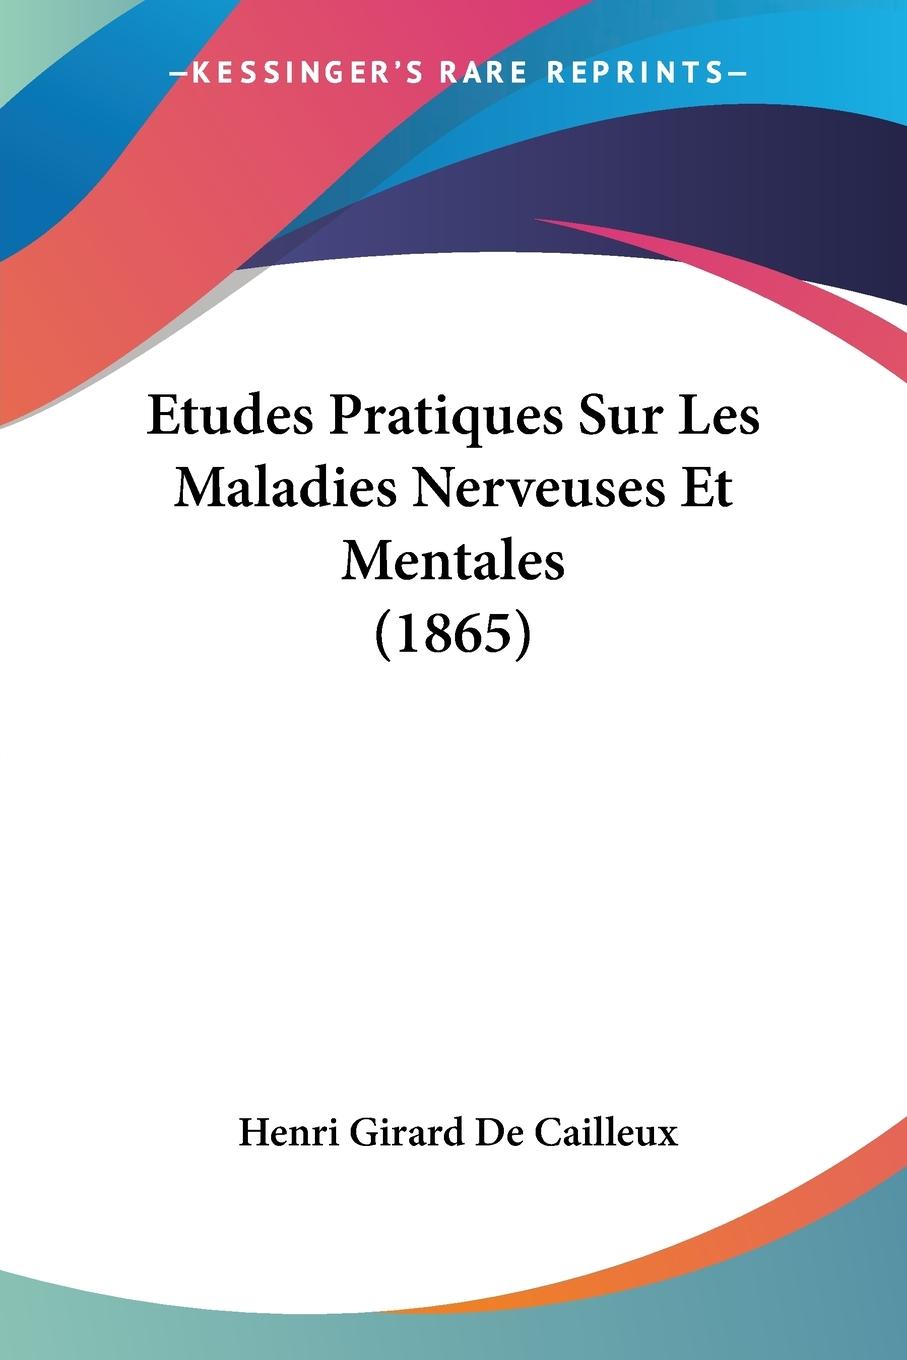 Etudes Pratiques Sur Les Maladies Nerveuses Et Mentales (1865) - De Cailleux, Henri Girard